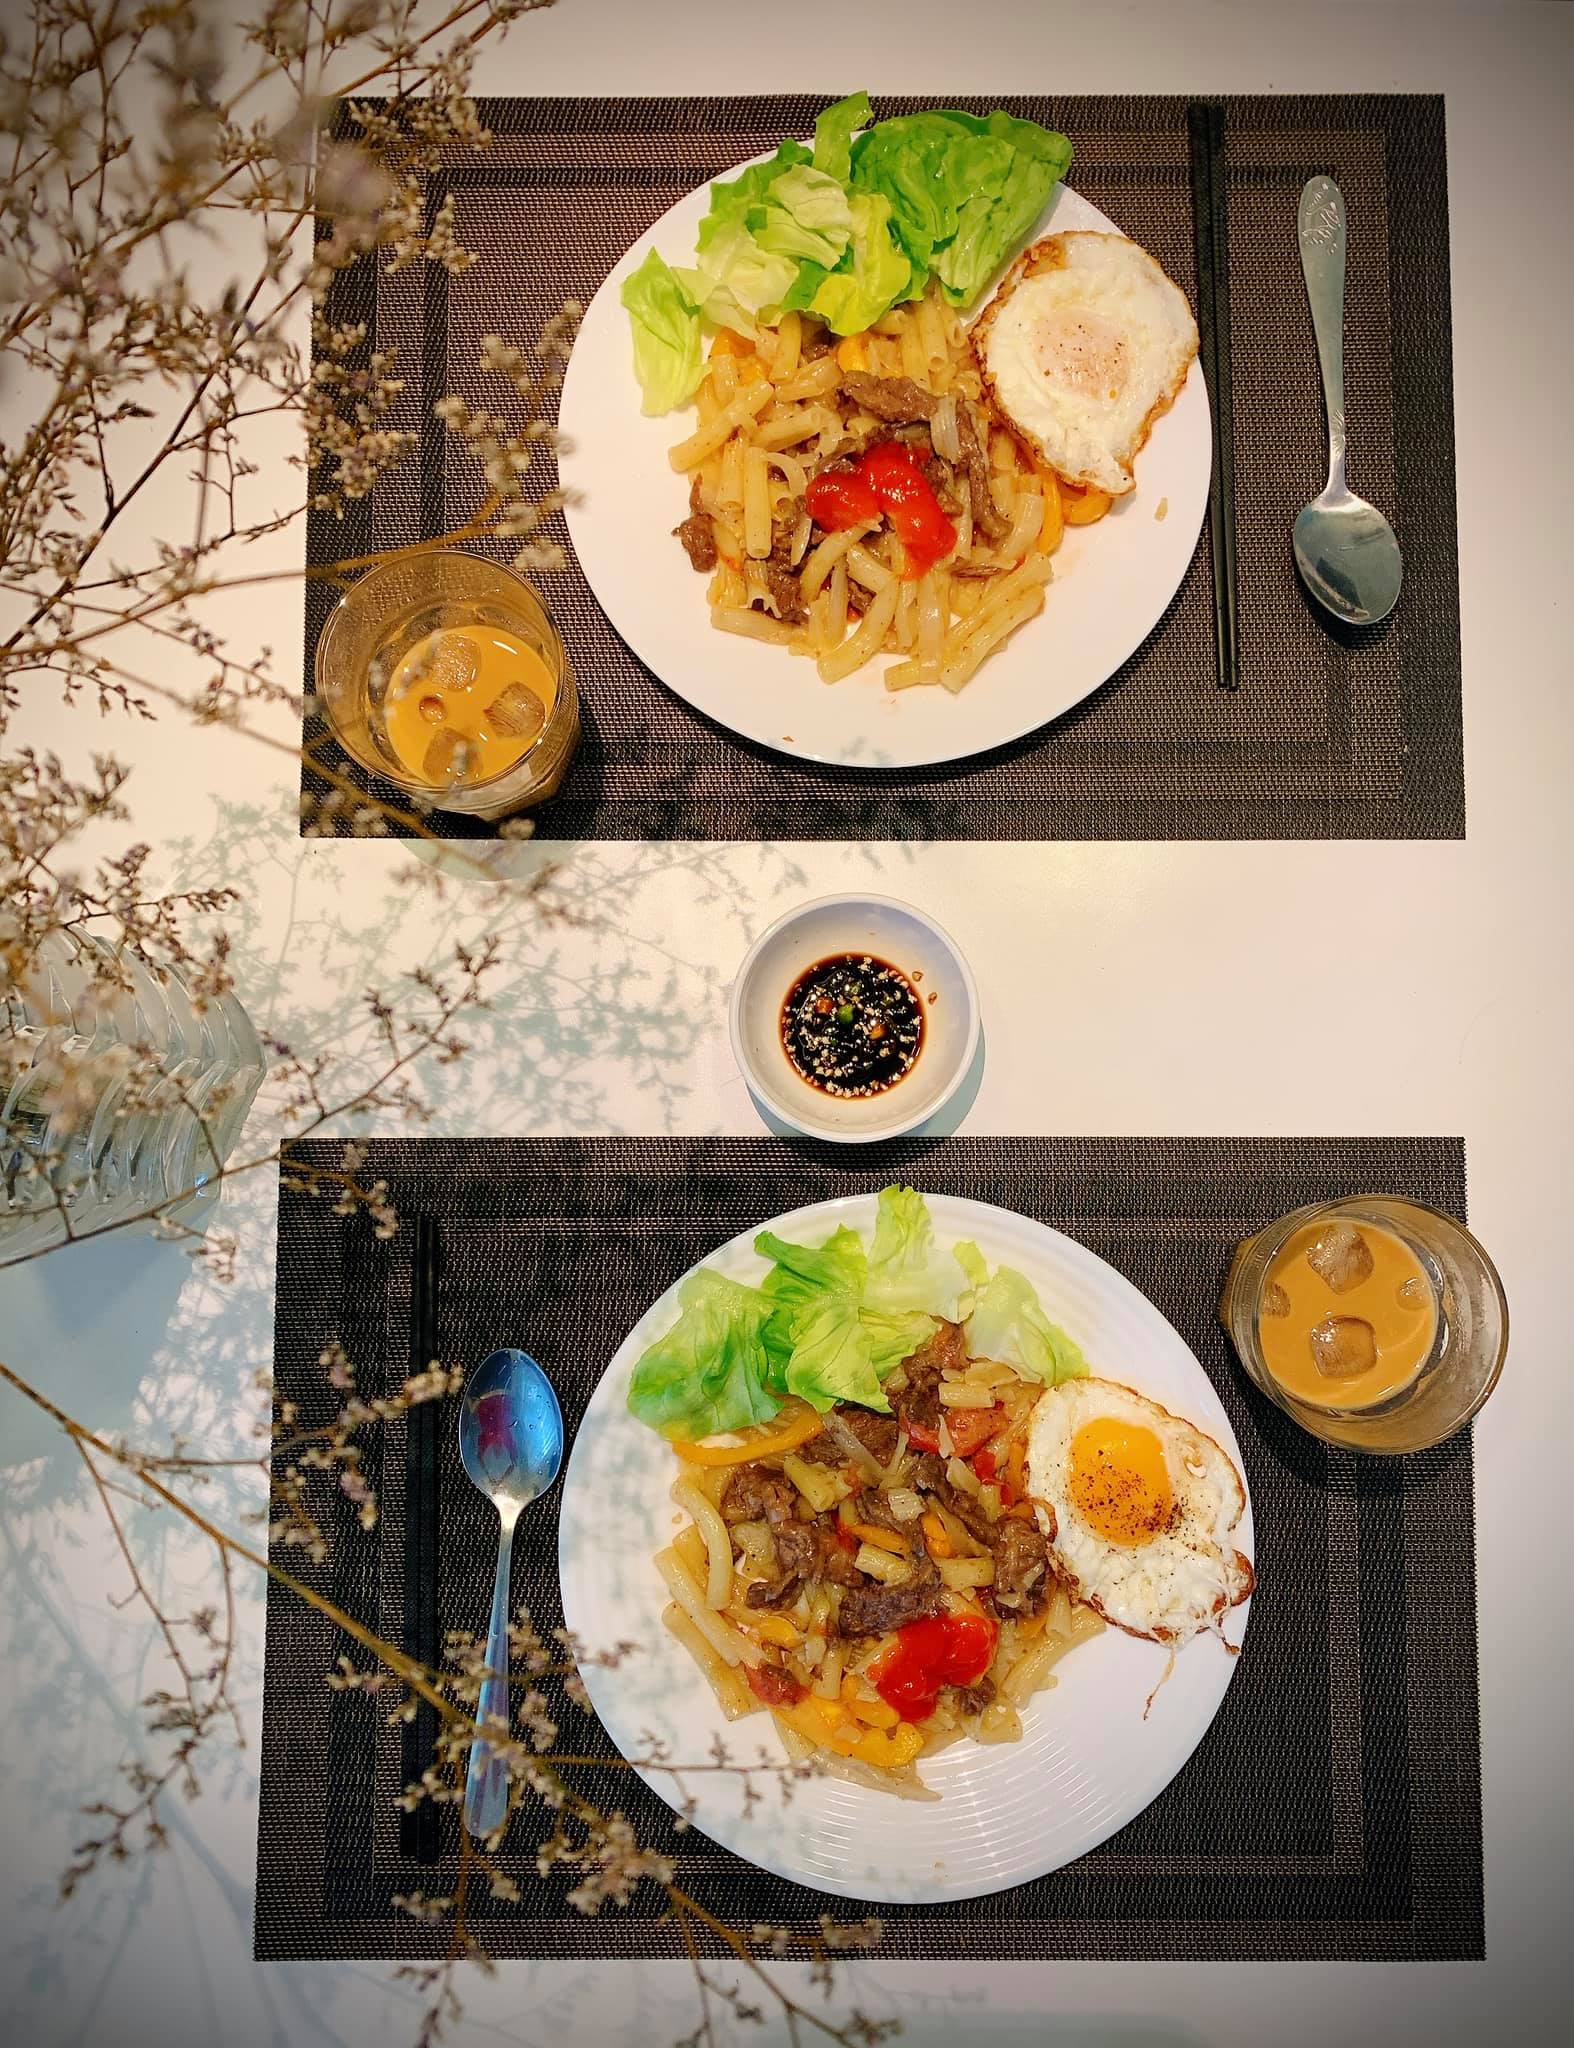 Hình: bữa ăn cùng nhau, thời chưa giãn cách.